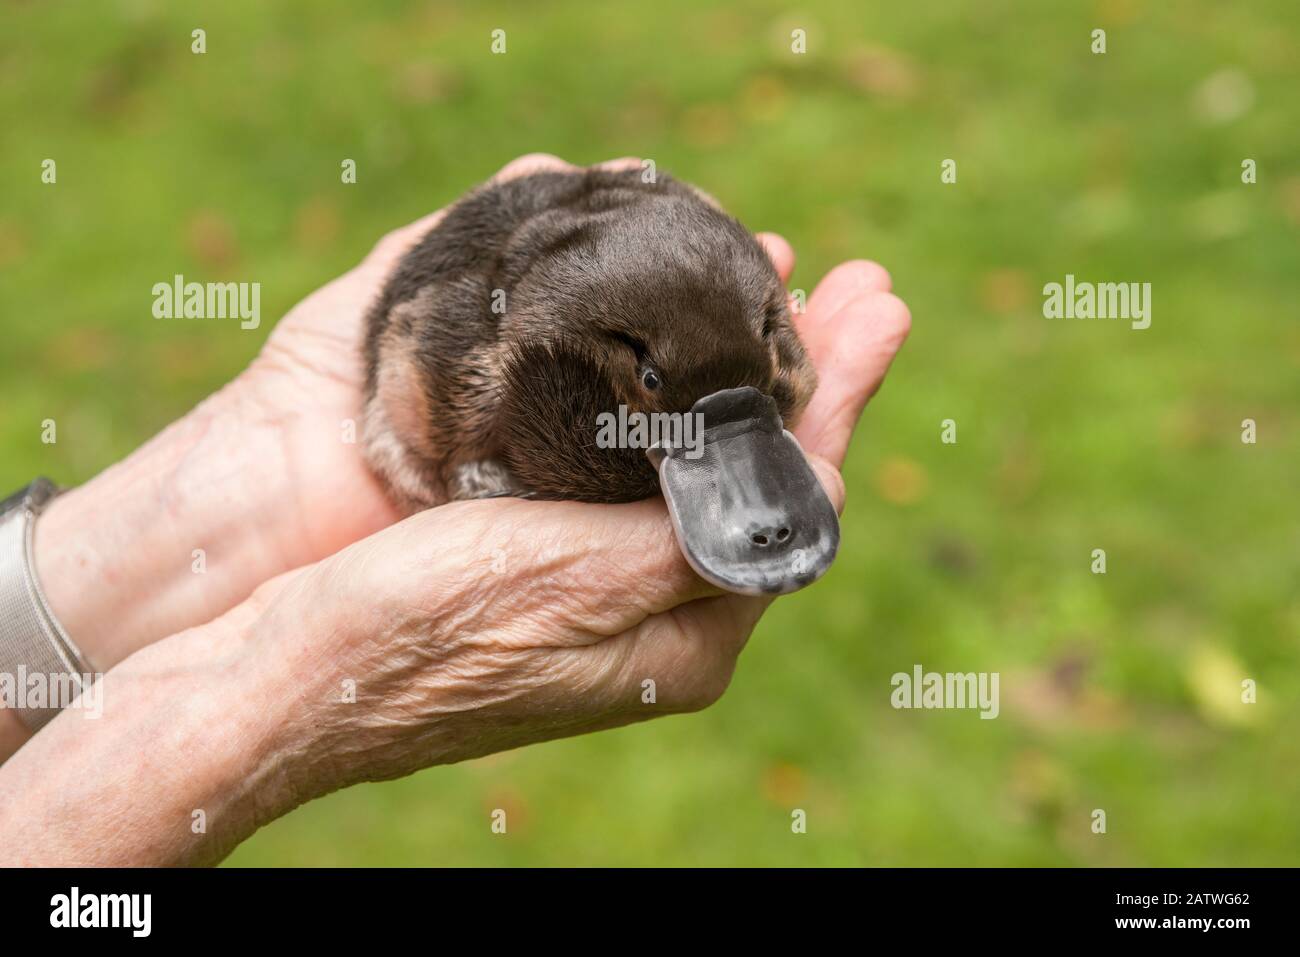 Fauna selvatica carer Margit Cianelli in possesso di Platypus (Ornithorhynchus anatinus) orfano, Atherton Tablelands, Queensland, Australia. Modello rilasciato. Foto Stock